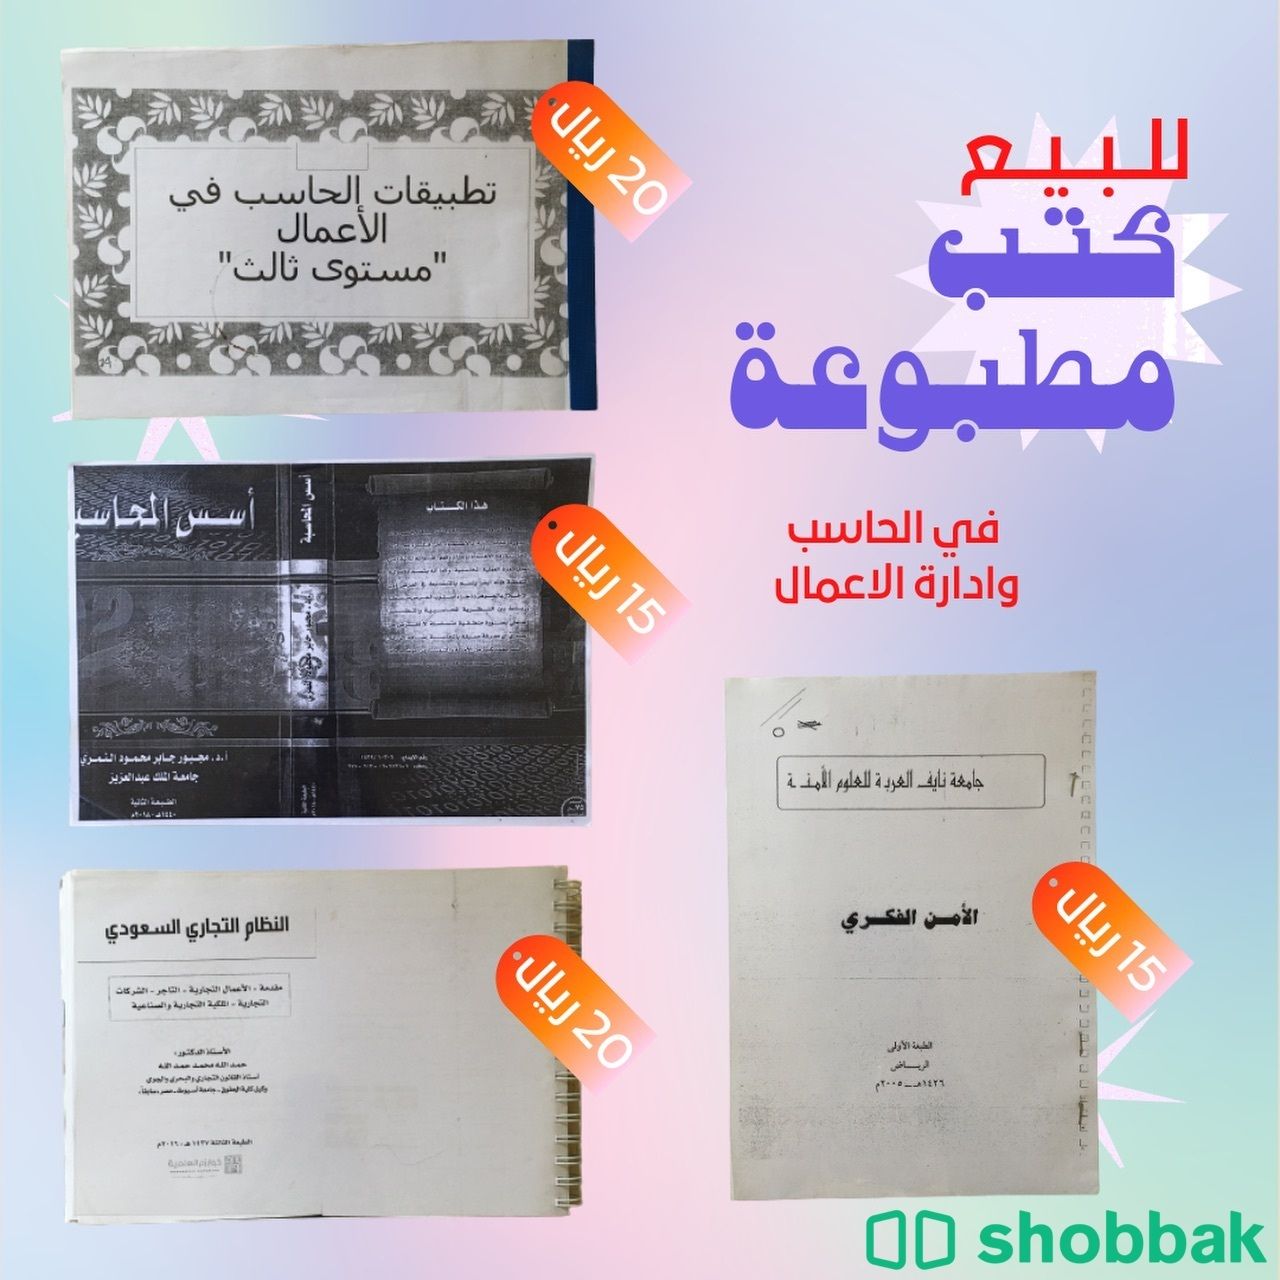 كتب عامة وتخصص للسنوات الجامعية  Shobbak Saudi Arabia